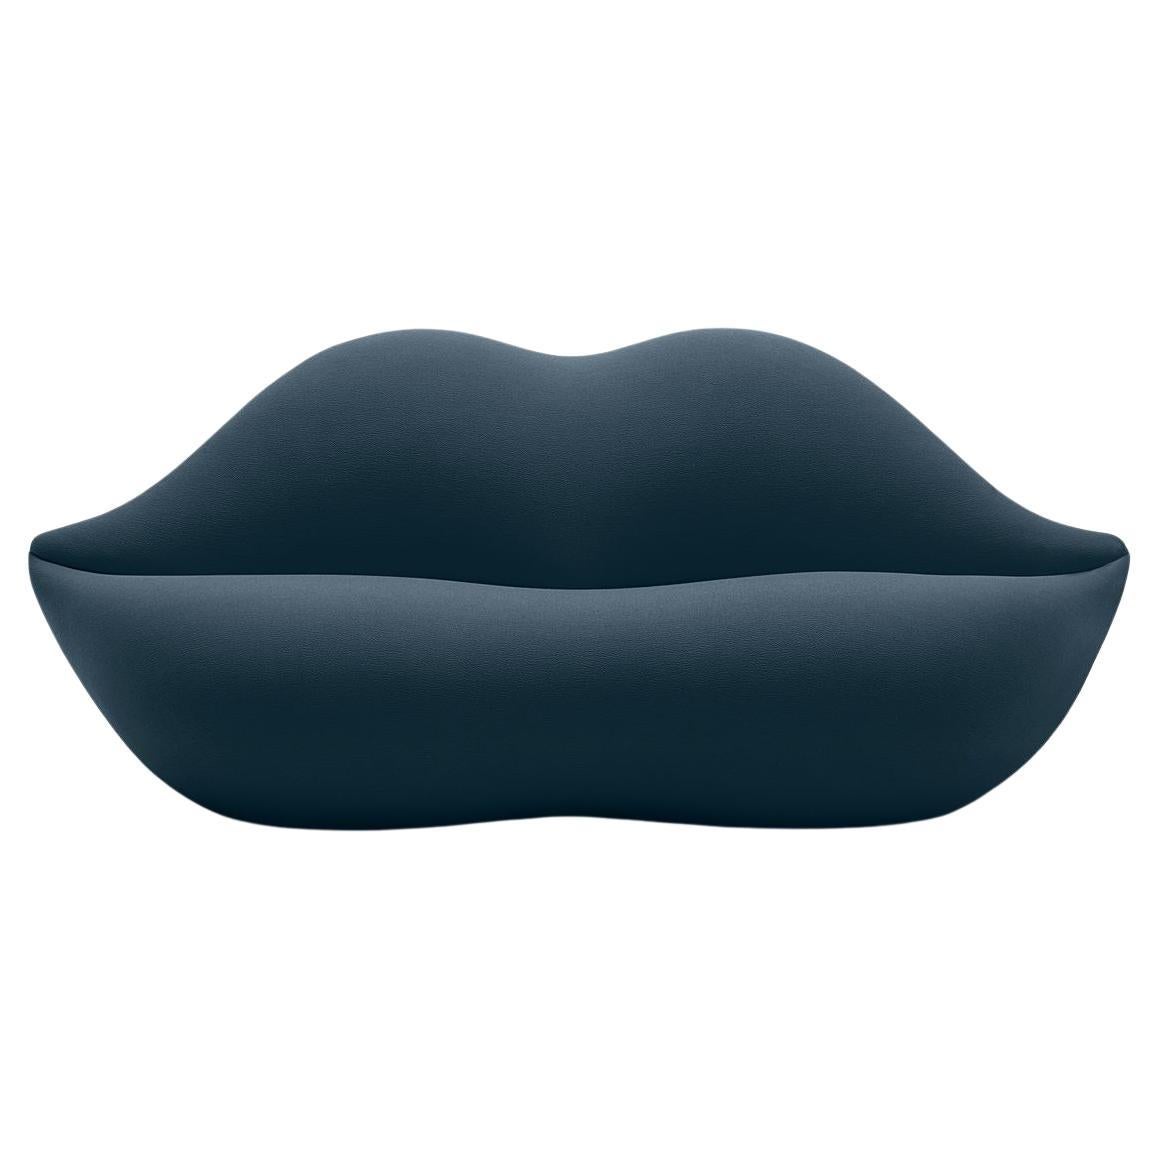 Gufram, Bocca Lip-Shaped Sofa, Sapphire, by Studio 65